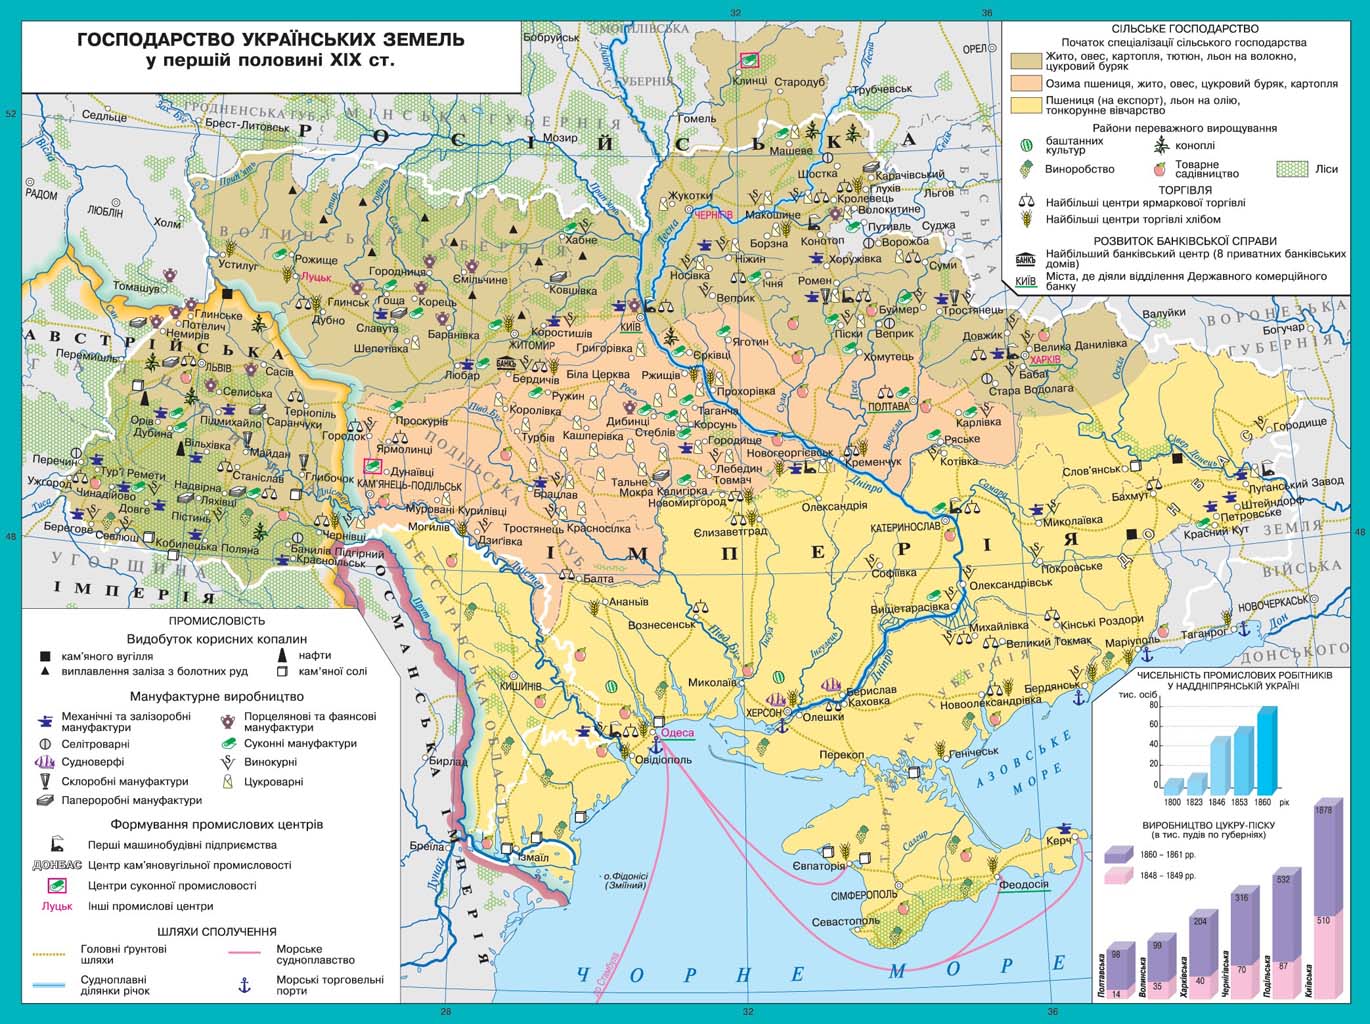 Контрольная работа: Хозяйство украинских земель в доисторические времена